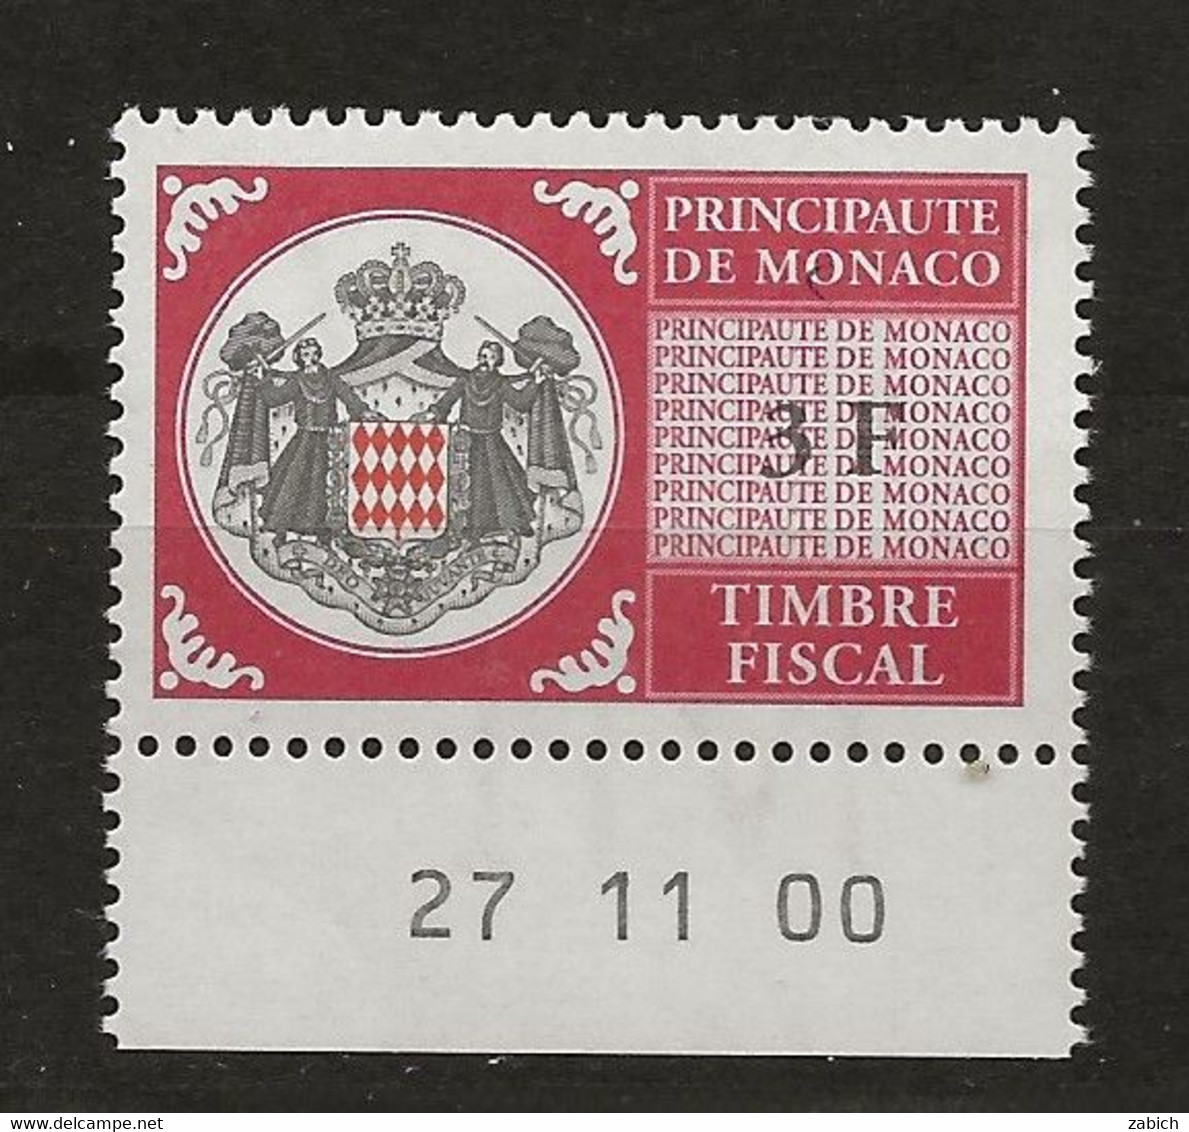 TIMBRES FISCAUX DE MONACO SERIE UNIFIEE N°99 3 F Rouge  Coin Daté Du 27 11 00 Neuf Gomme Mnh (**) - Steuermarken